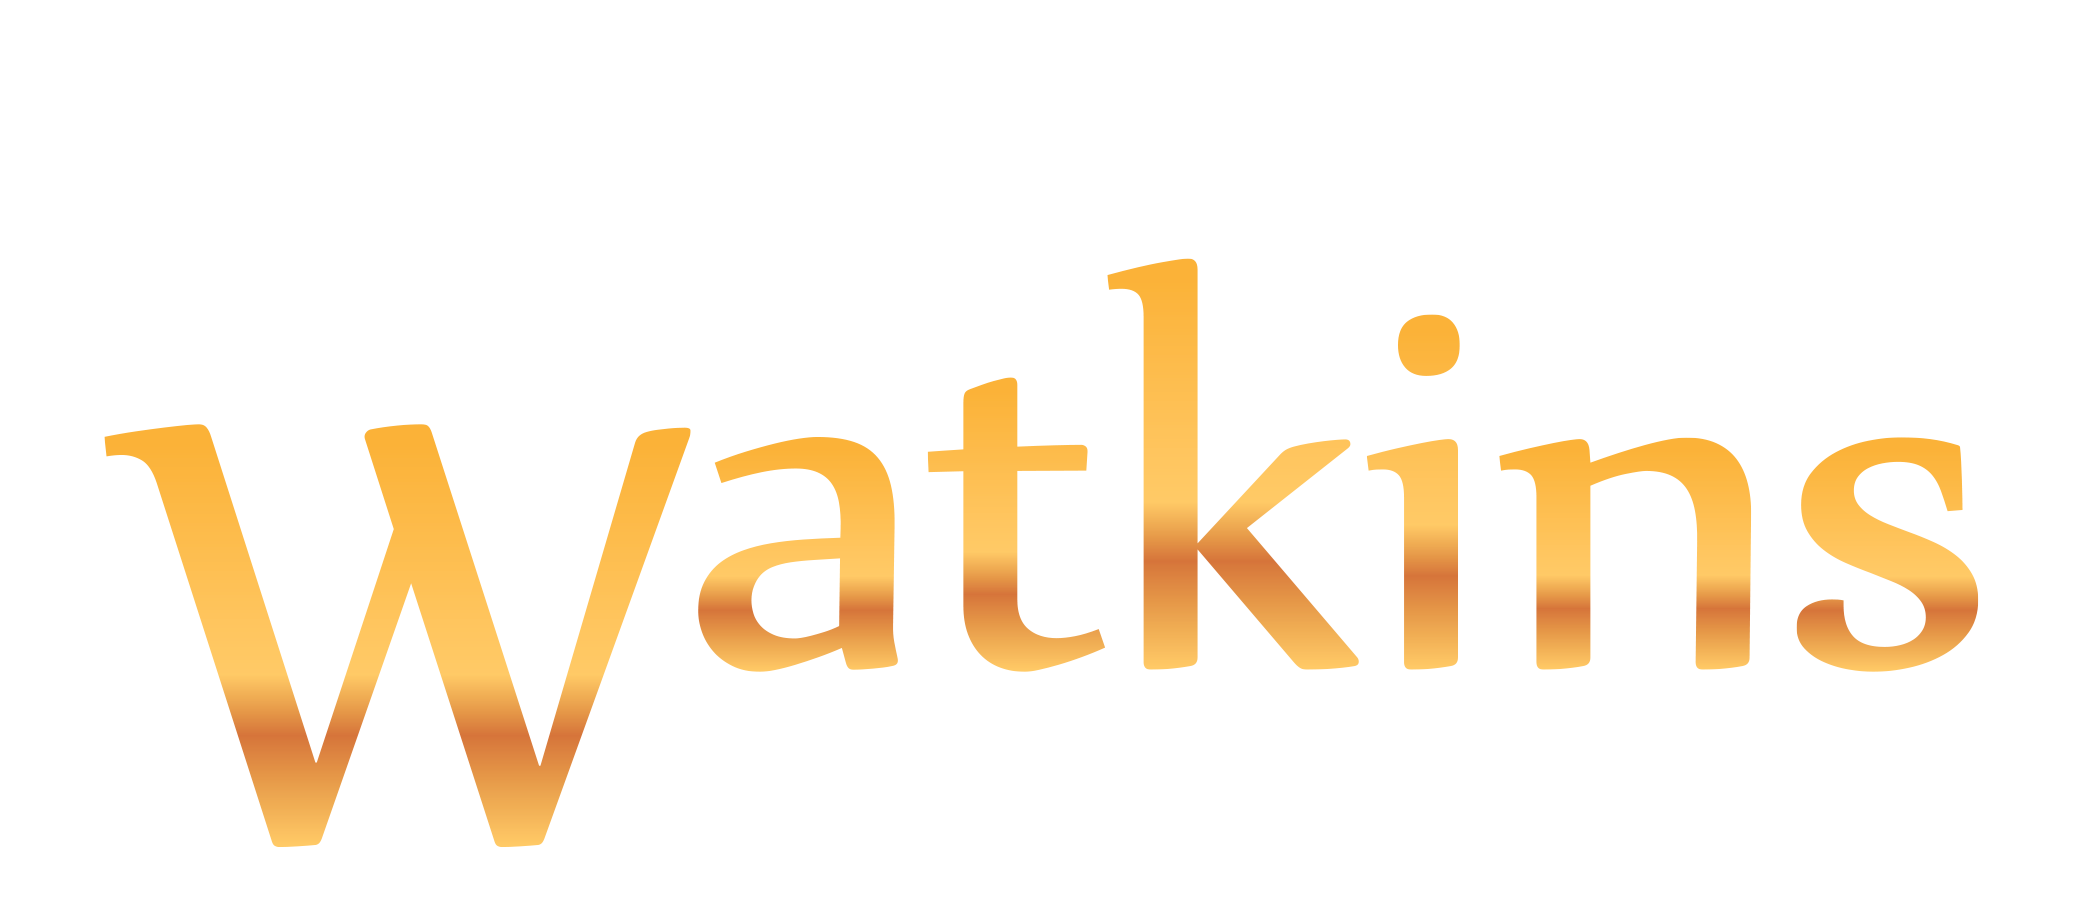 Watkins Bloodstock